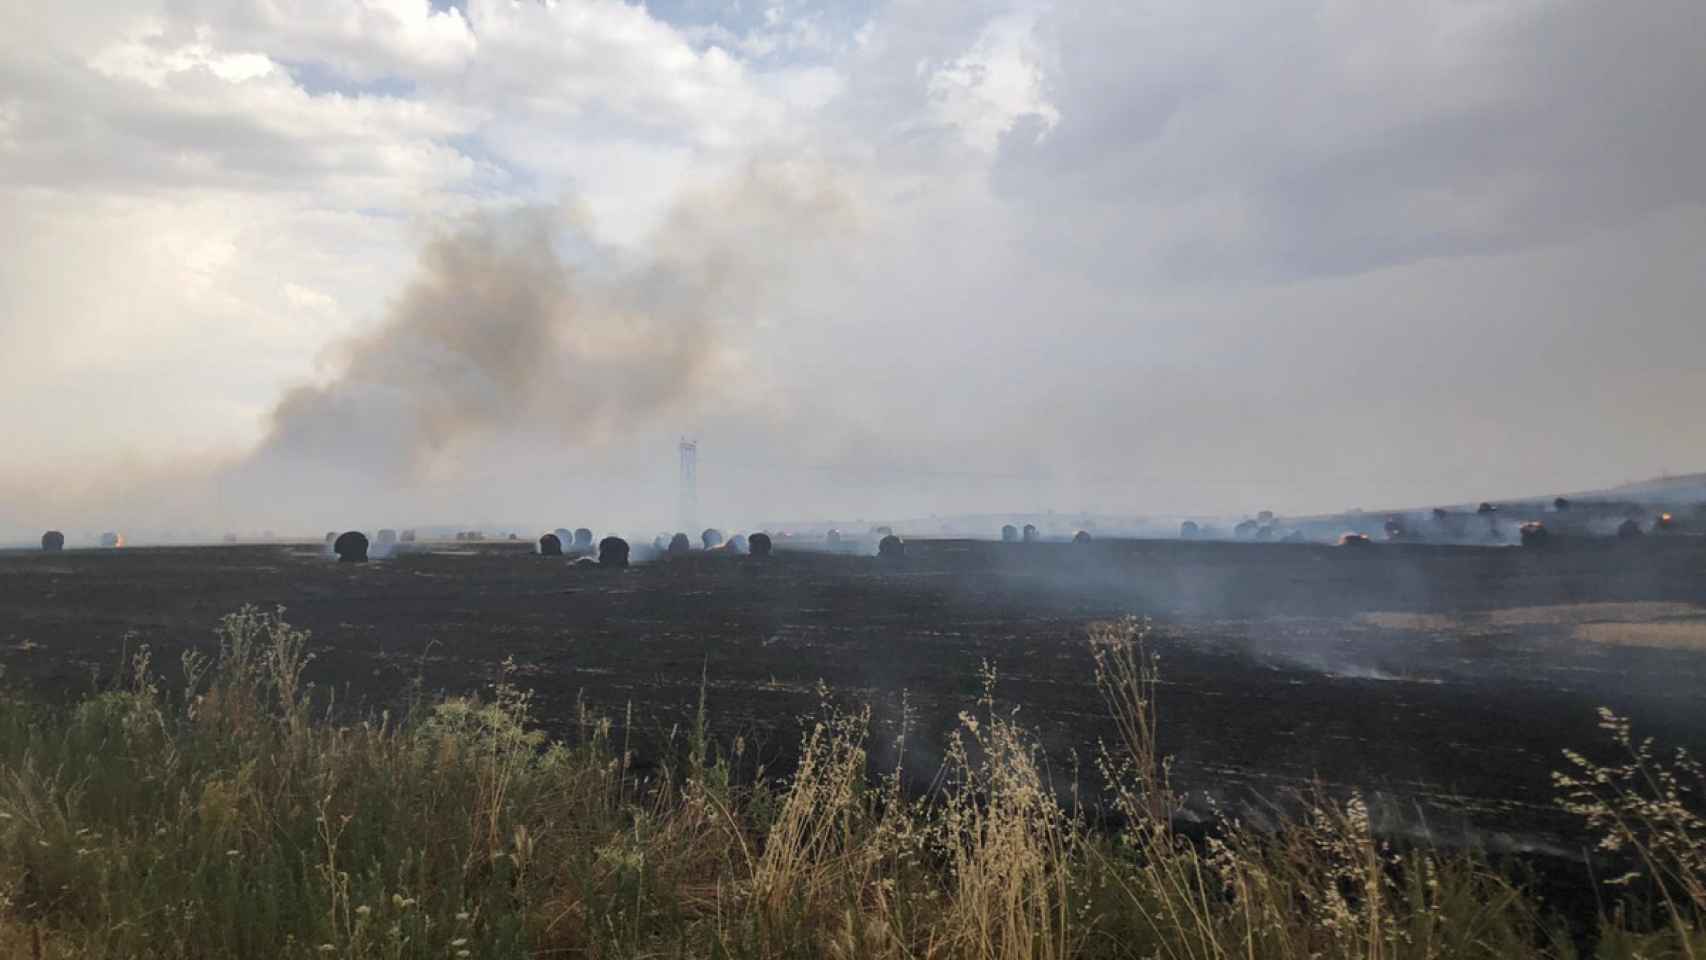 Imagen de un incendio en Zamora